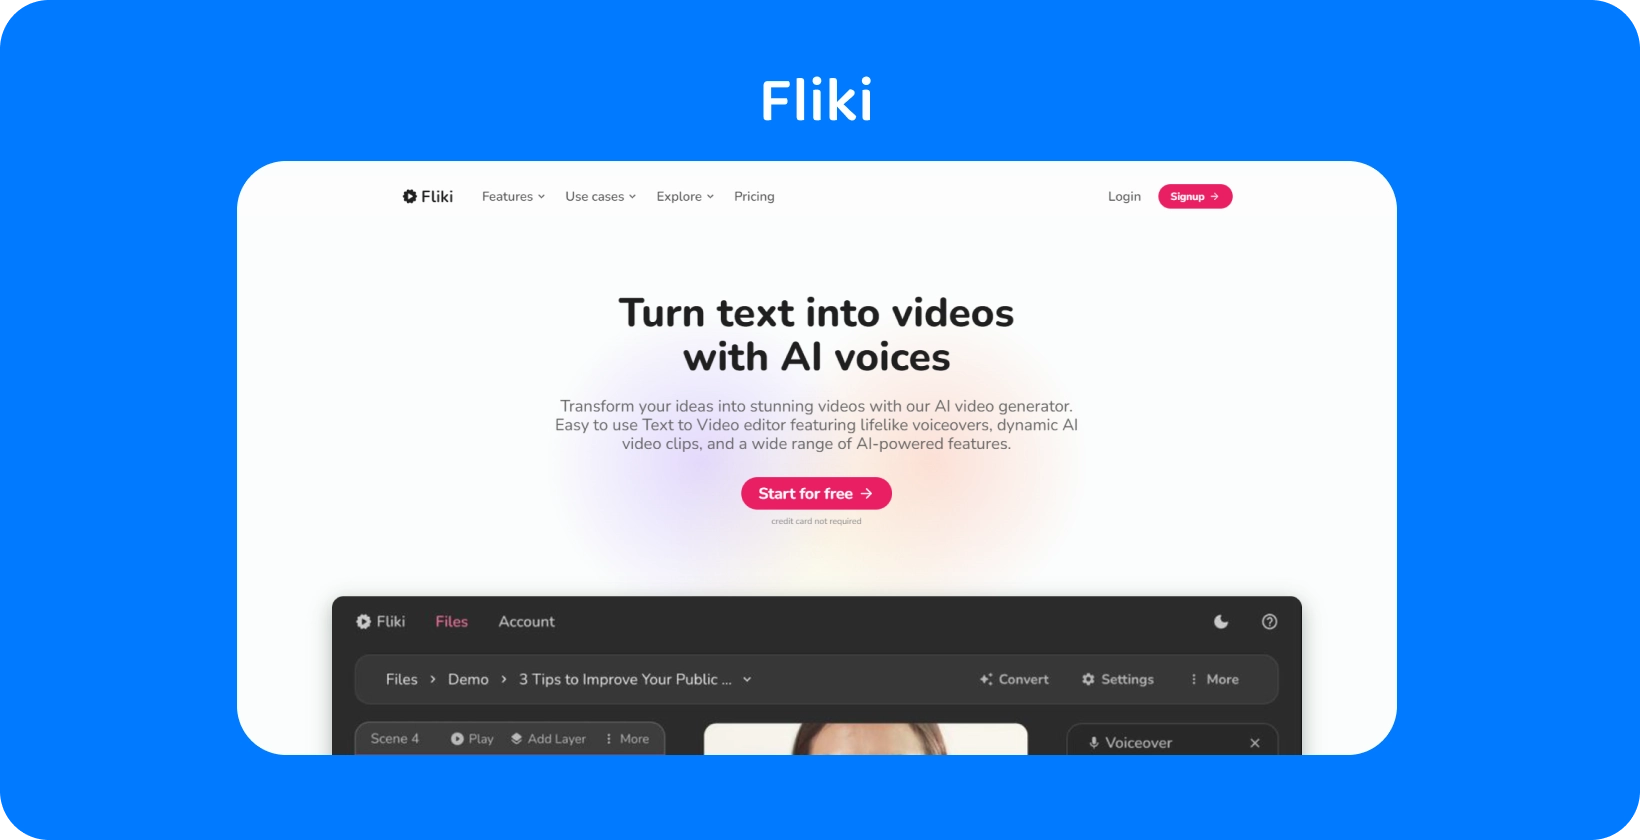 تعرض صفحة النظام الأساسي ل Fliki كيفية تحويل النص إلى مقاطع فيديو بأصوات AI ، مما يوفر تجربة تحرير النص إلى فيديو.